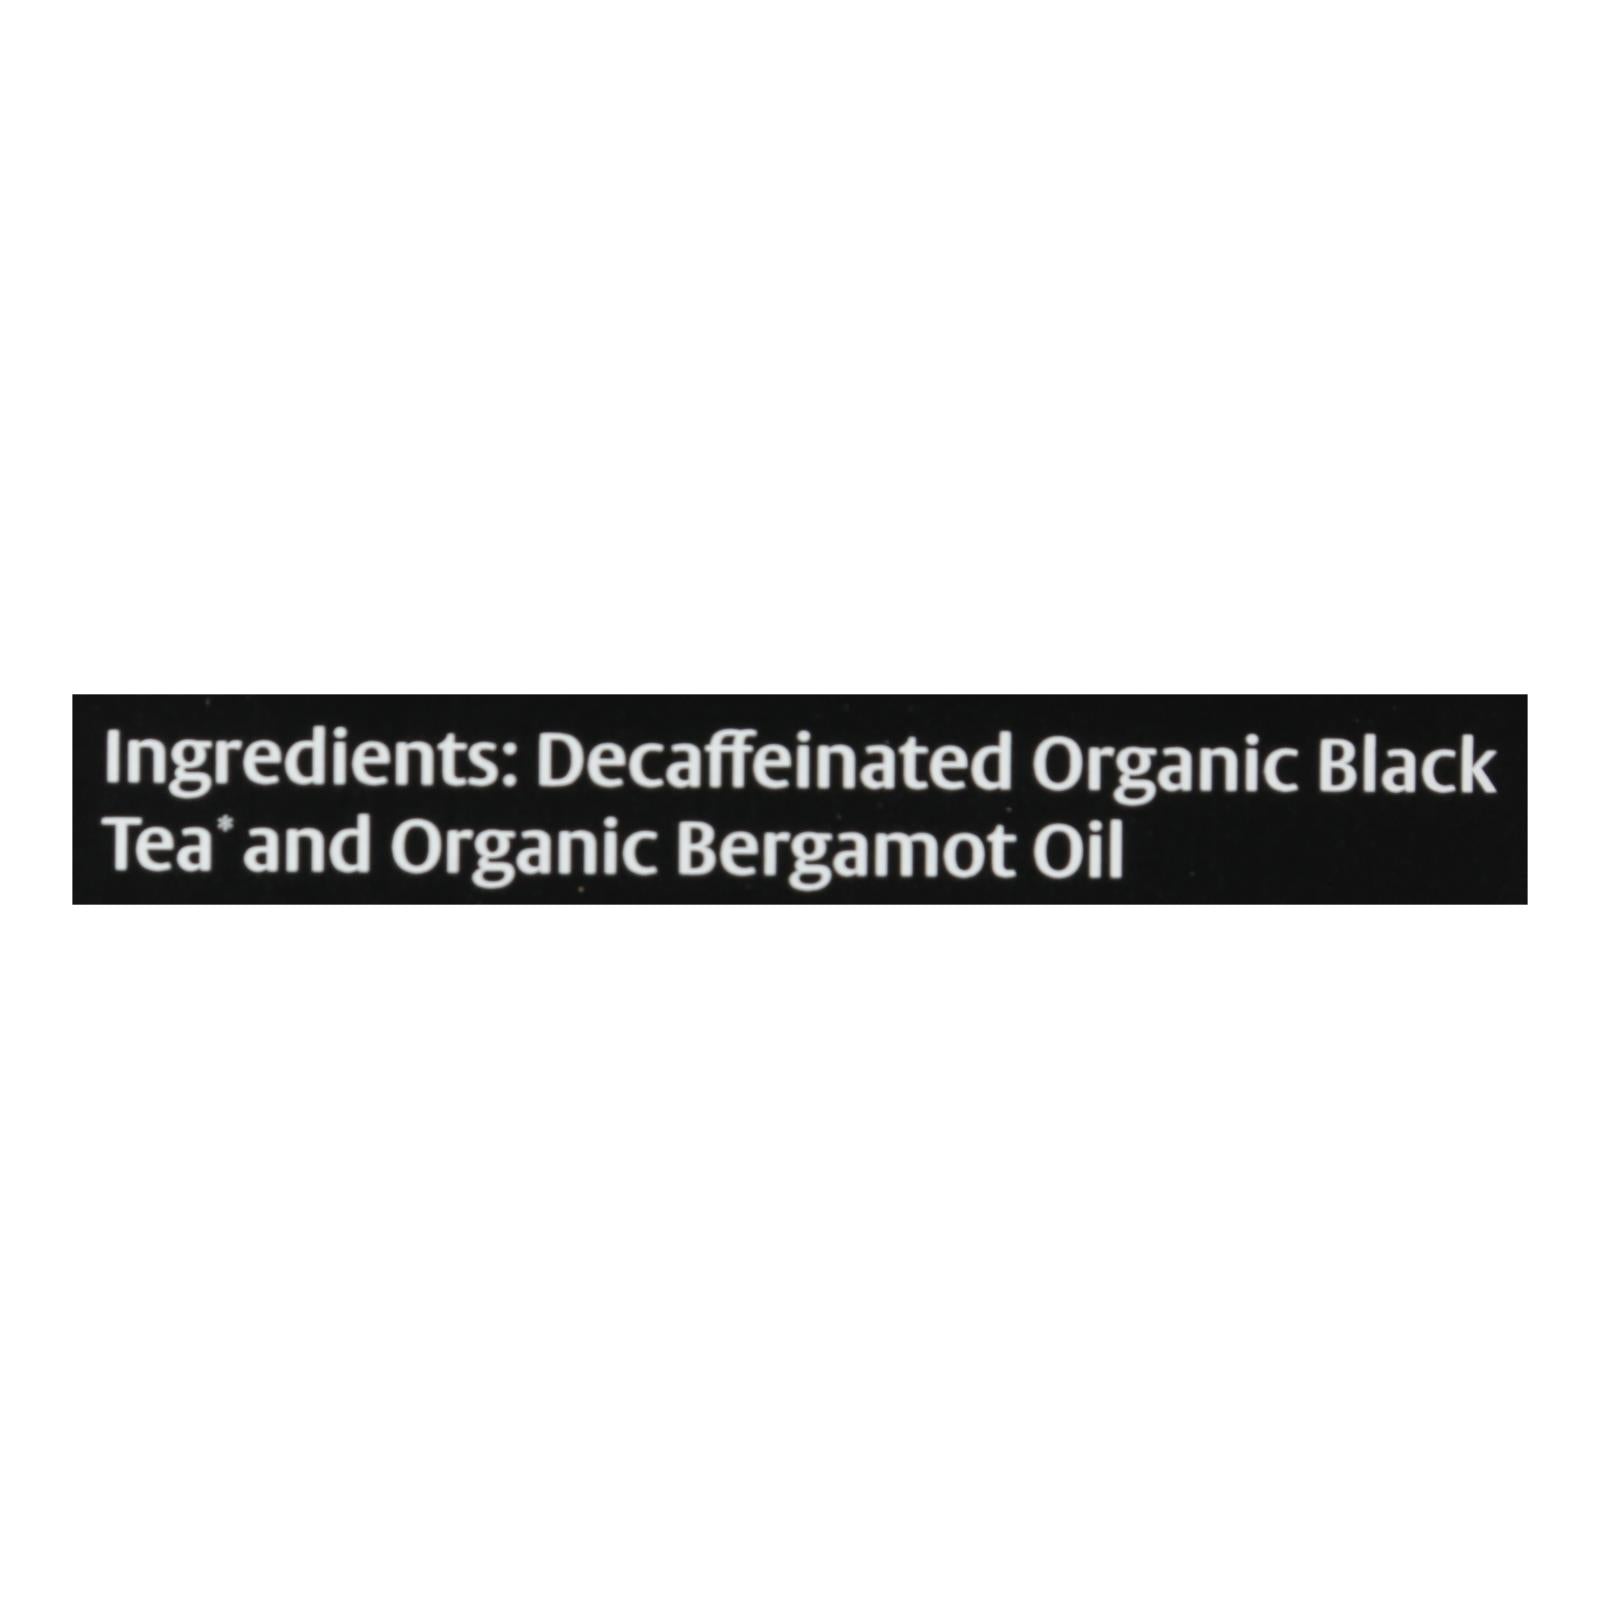 Choice Organic Teas Decaffeinated Earl Grey Tea - 16 Tea Bags - Case Of 6